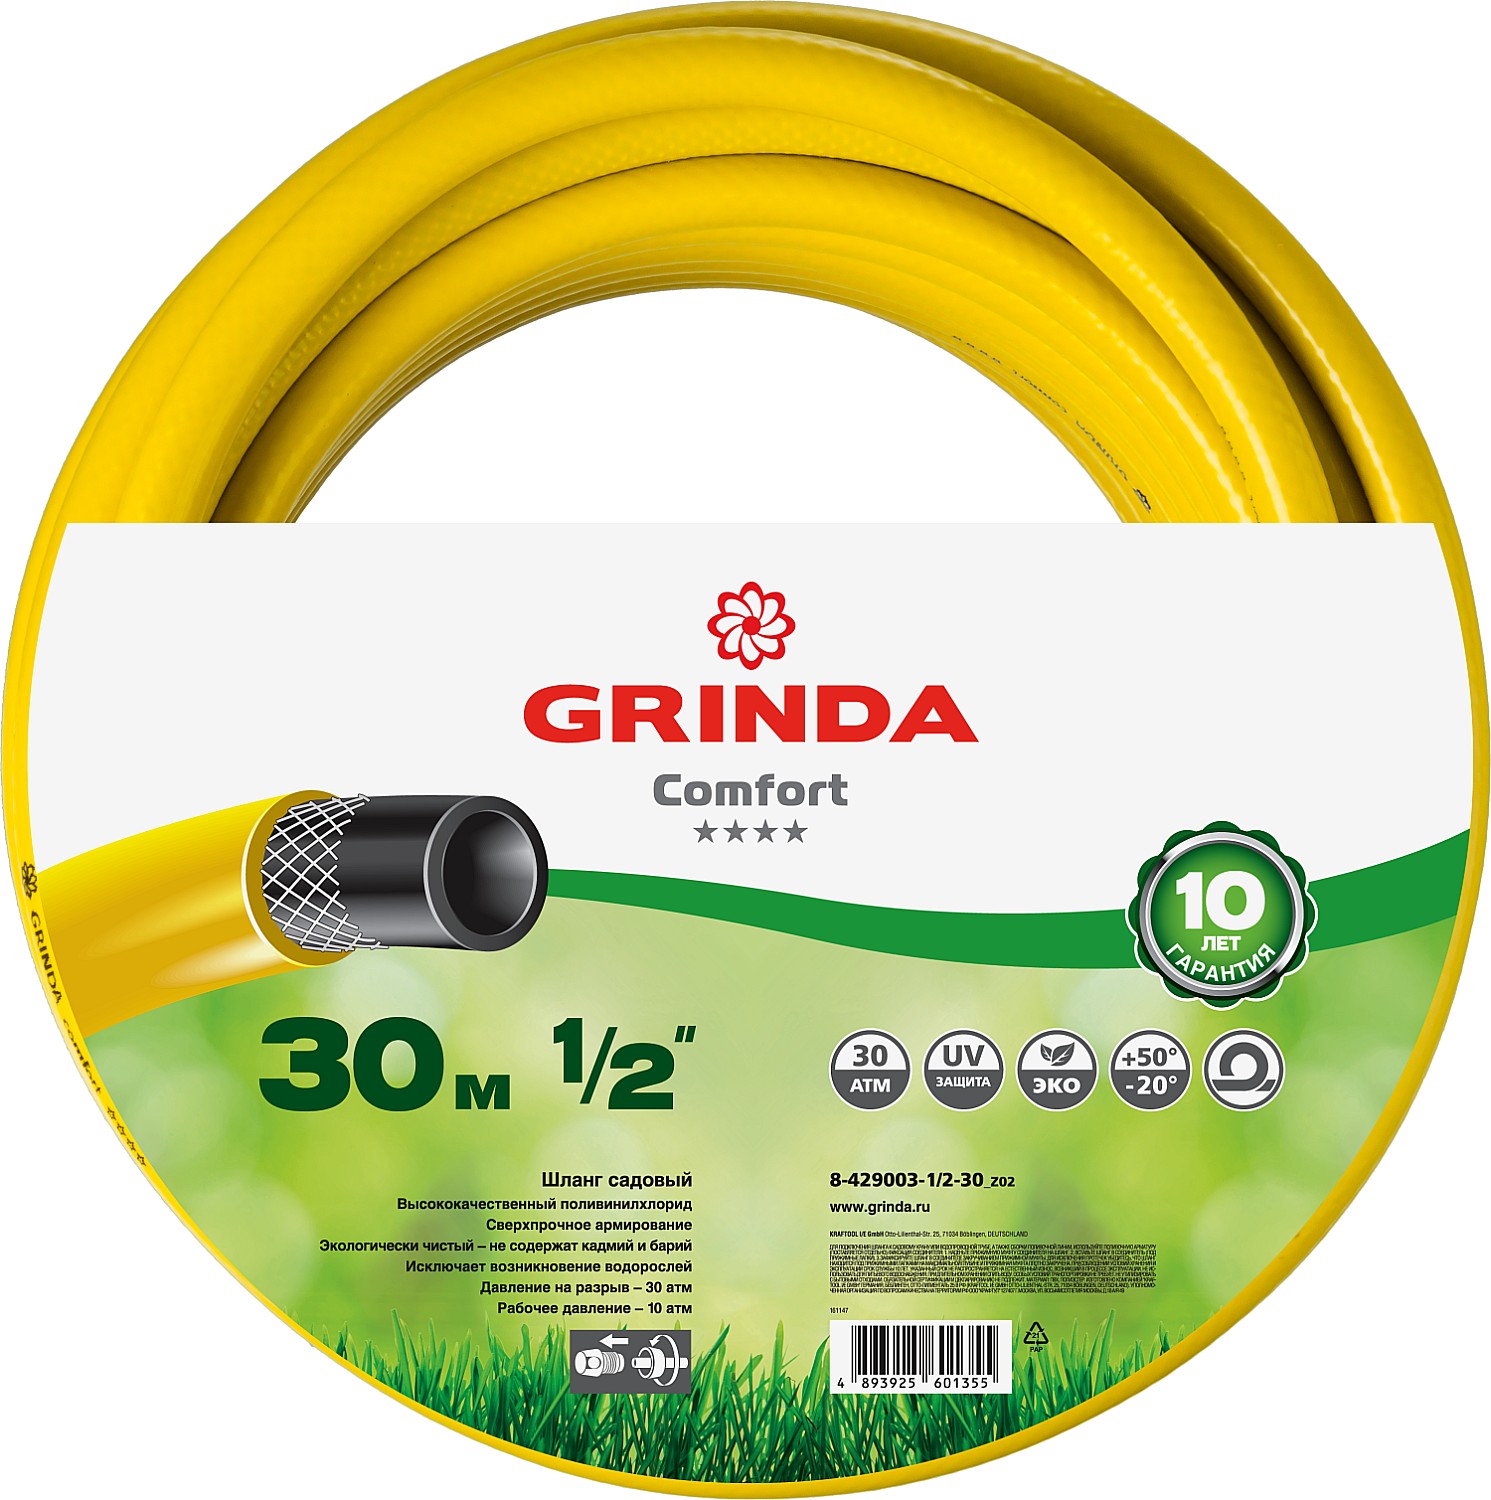 Шланг для полива Grinda Comfort 8-429003-1/2-30_z02 1/2 30 м - купить в МегаСтрой, цена на Мегамаркет